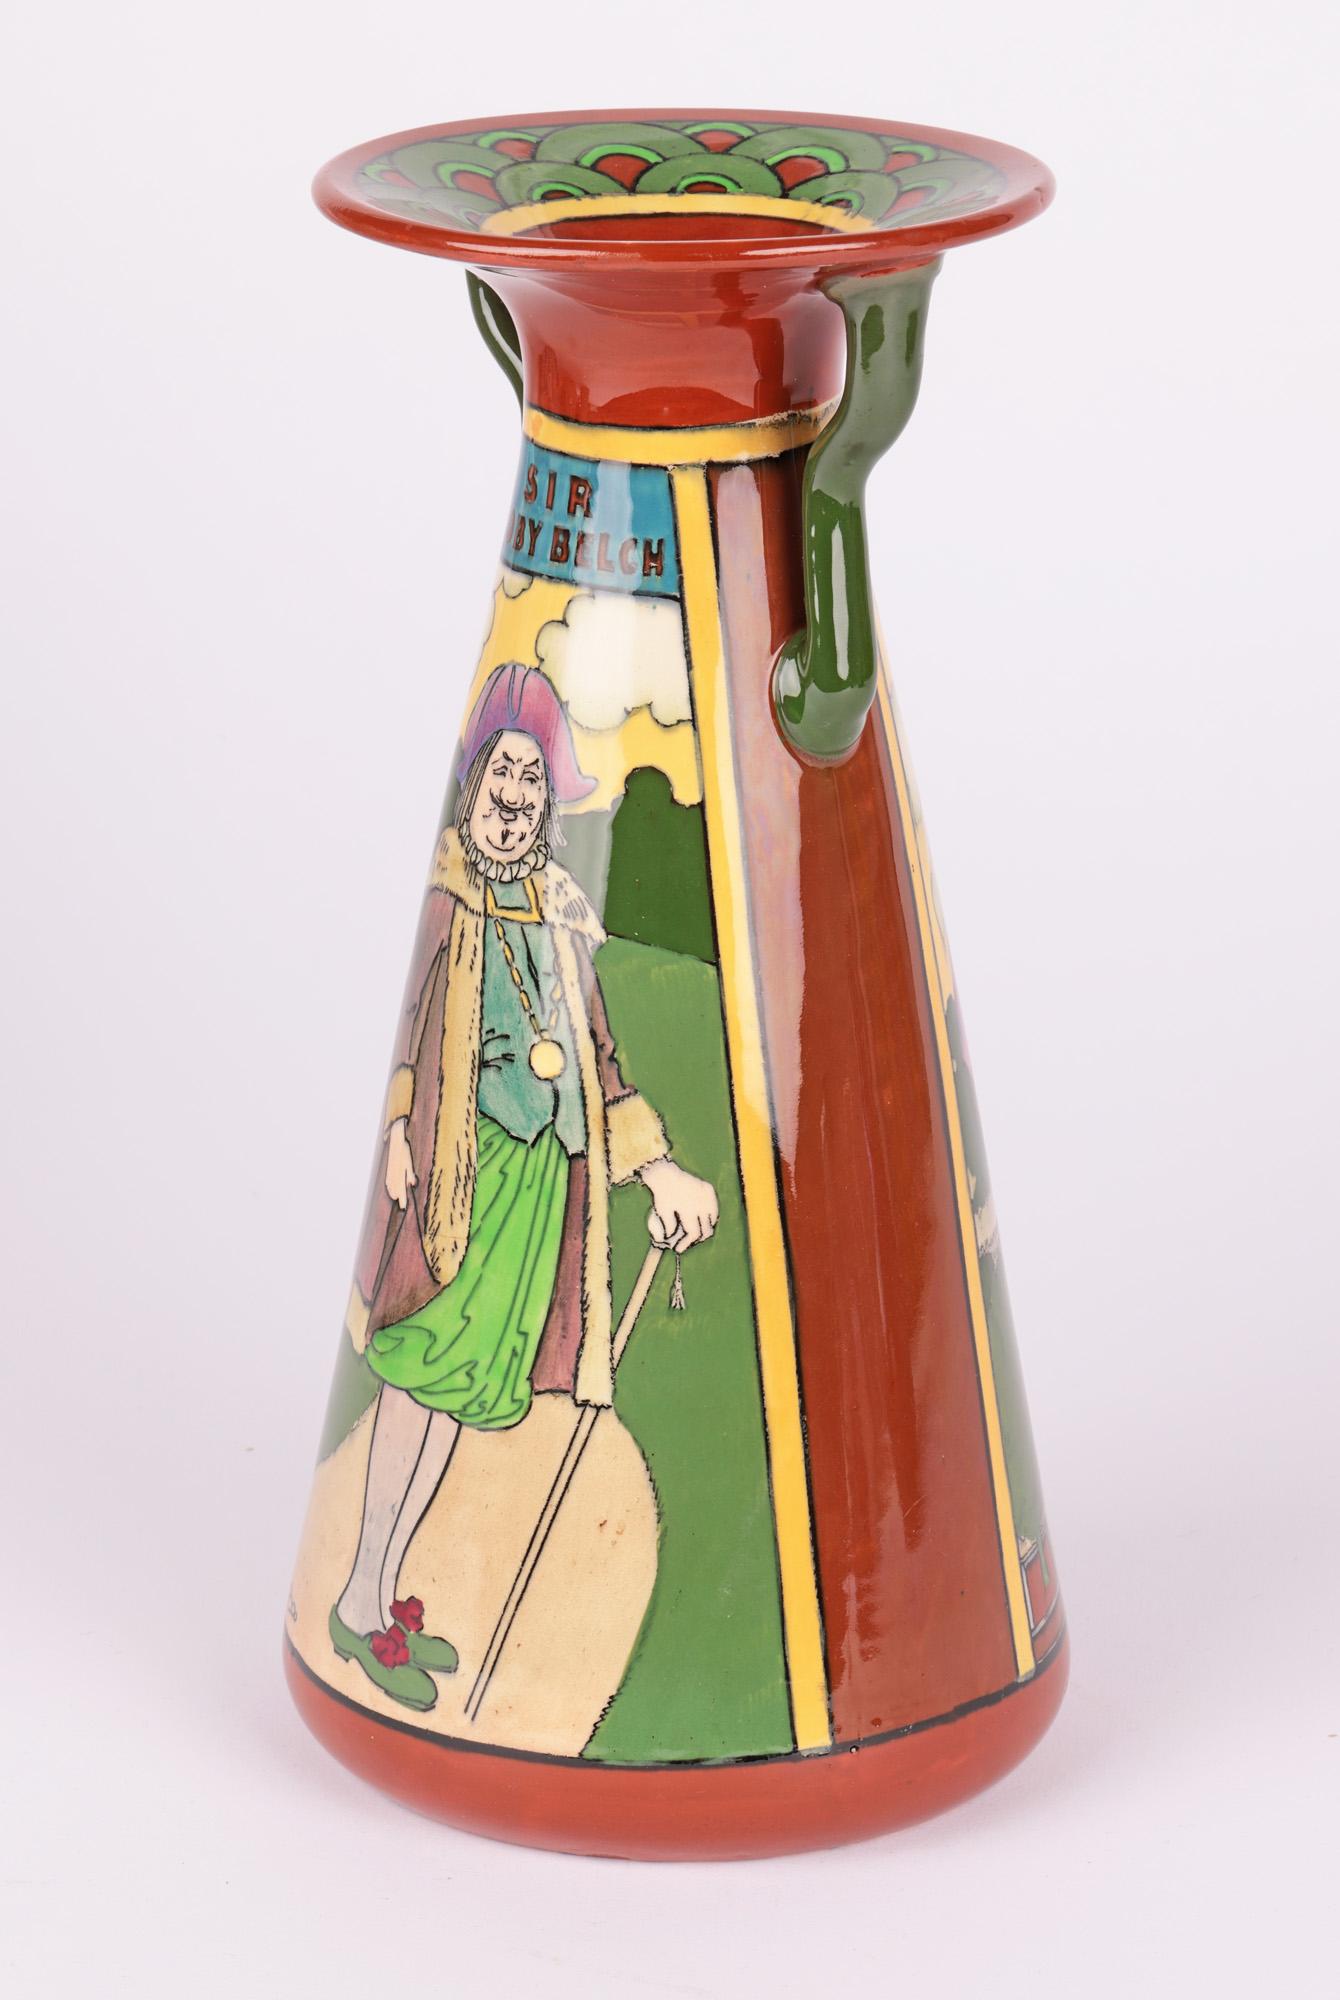 Frederick Rhead Foley Intarsio Twelfth Night Art Pottery Vase 1